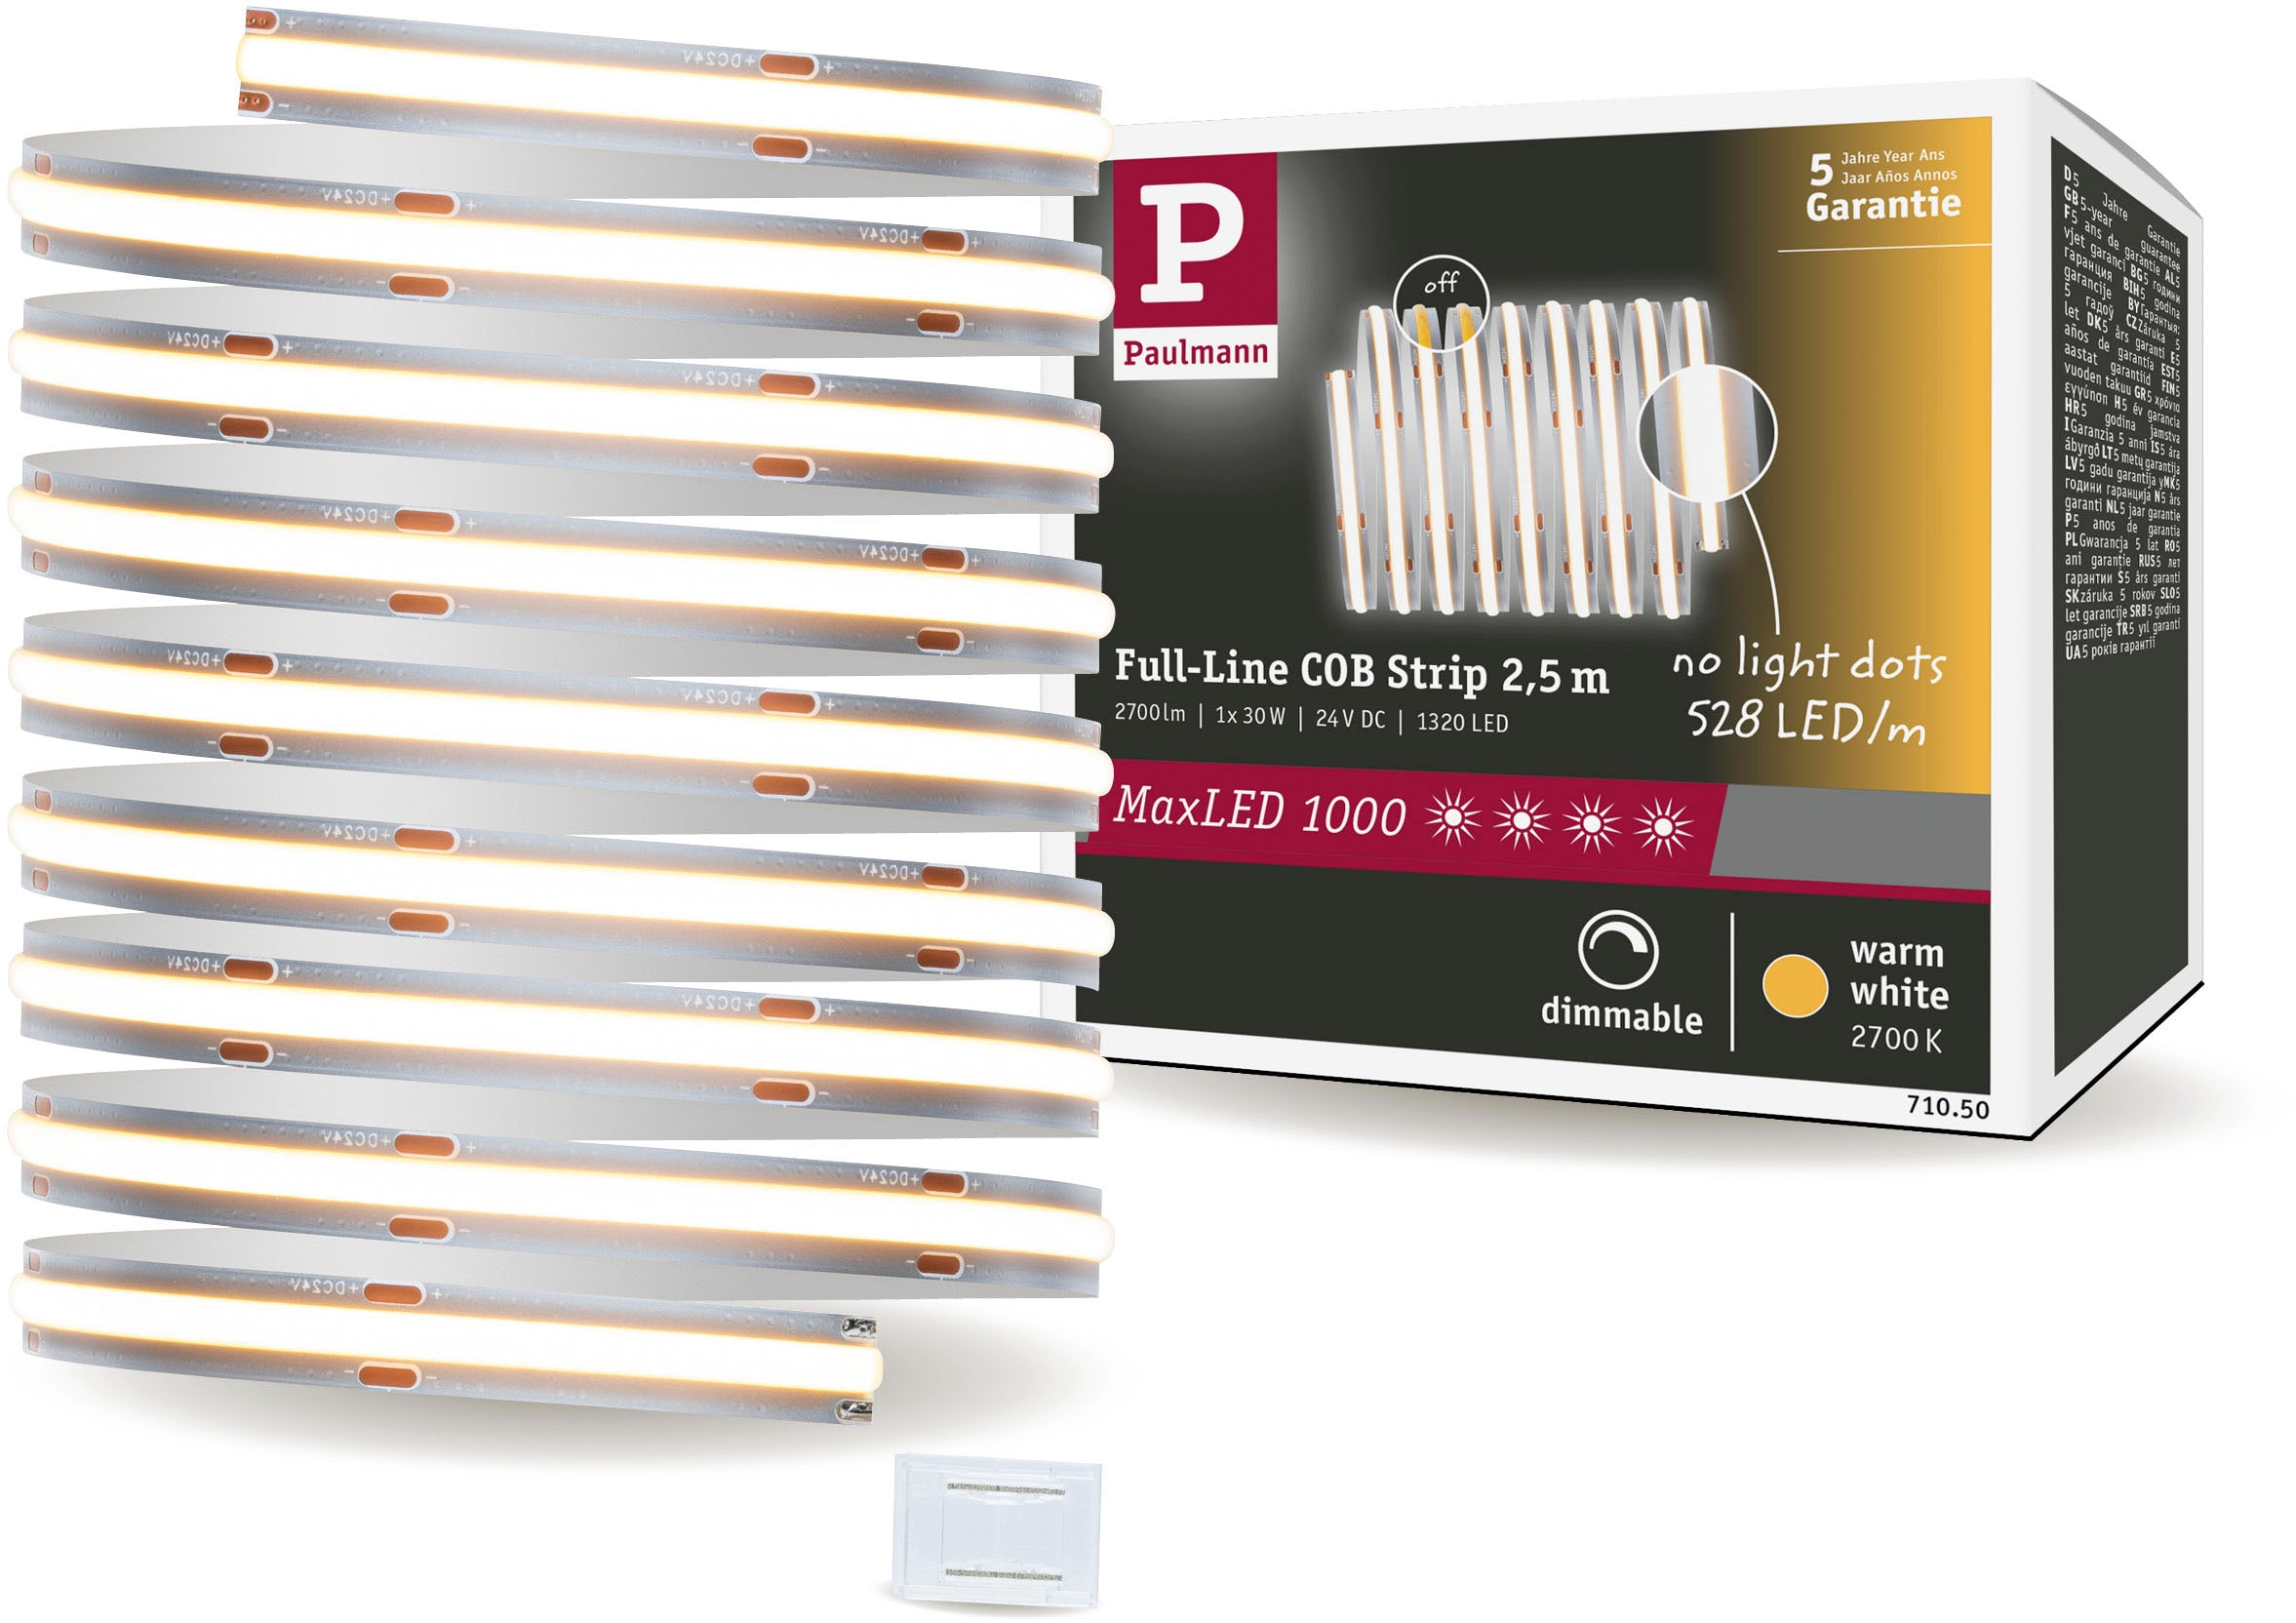 Paulmann MaxLED Stripe Zubehör LED-Streifen-Zubehör - kaufen bei